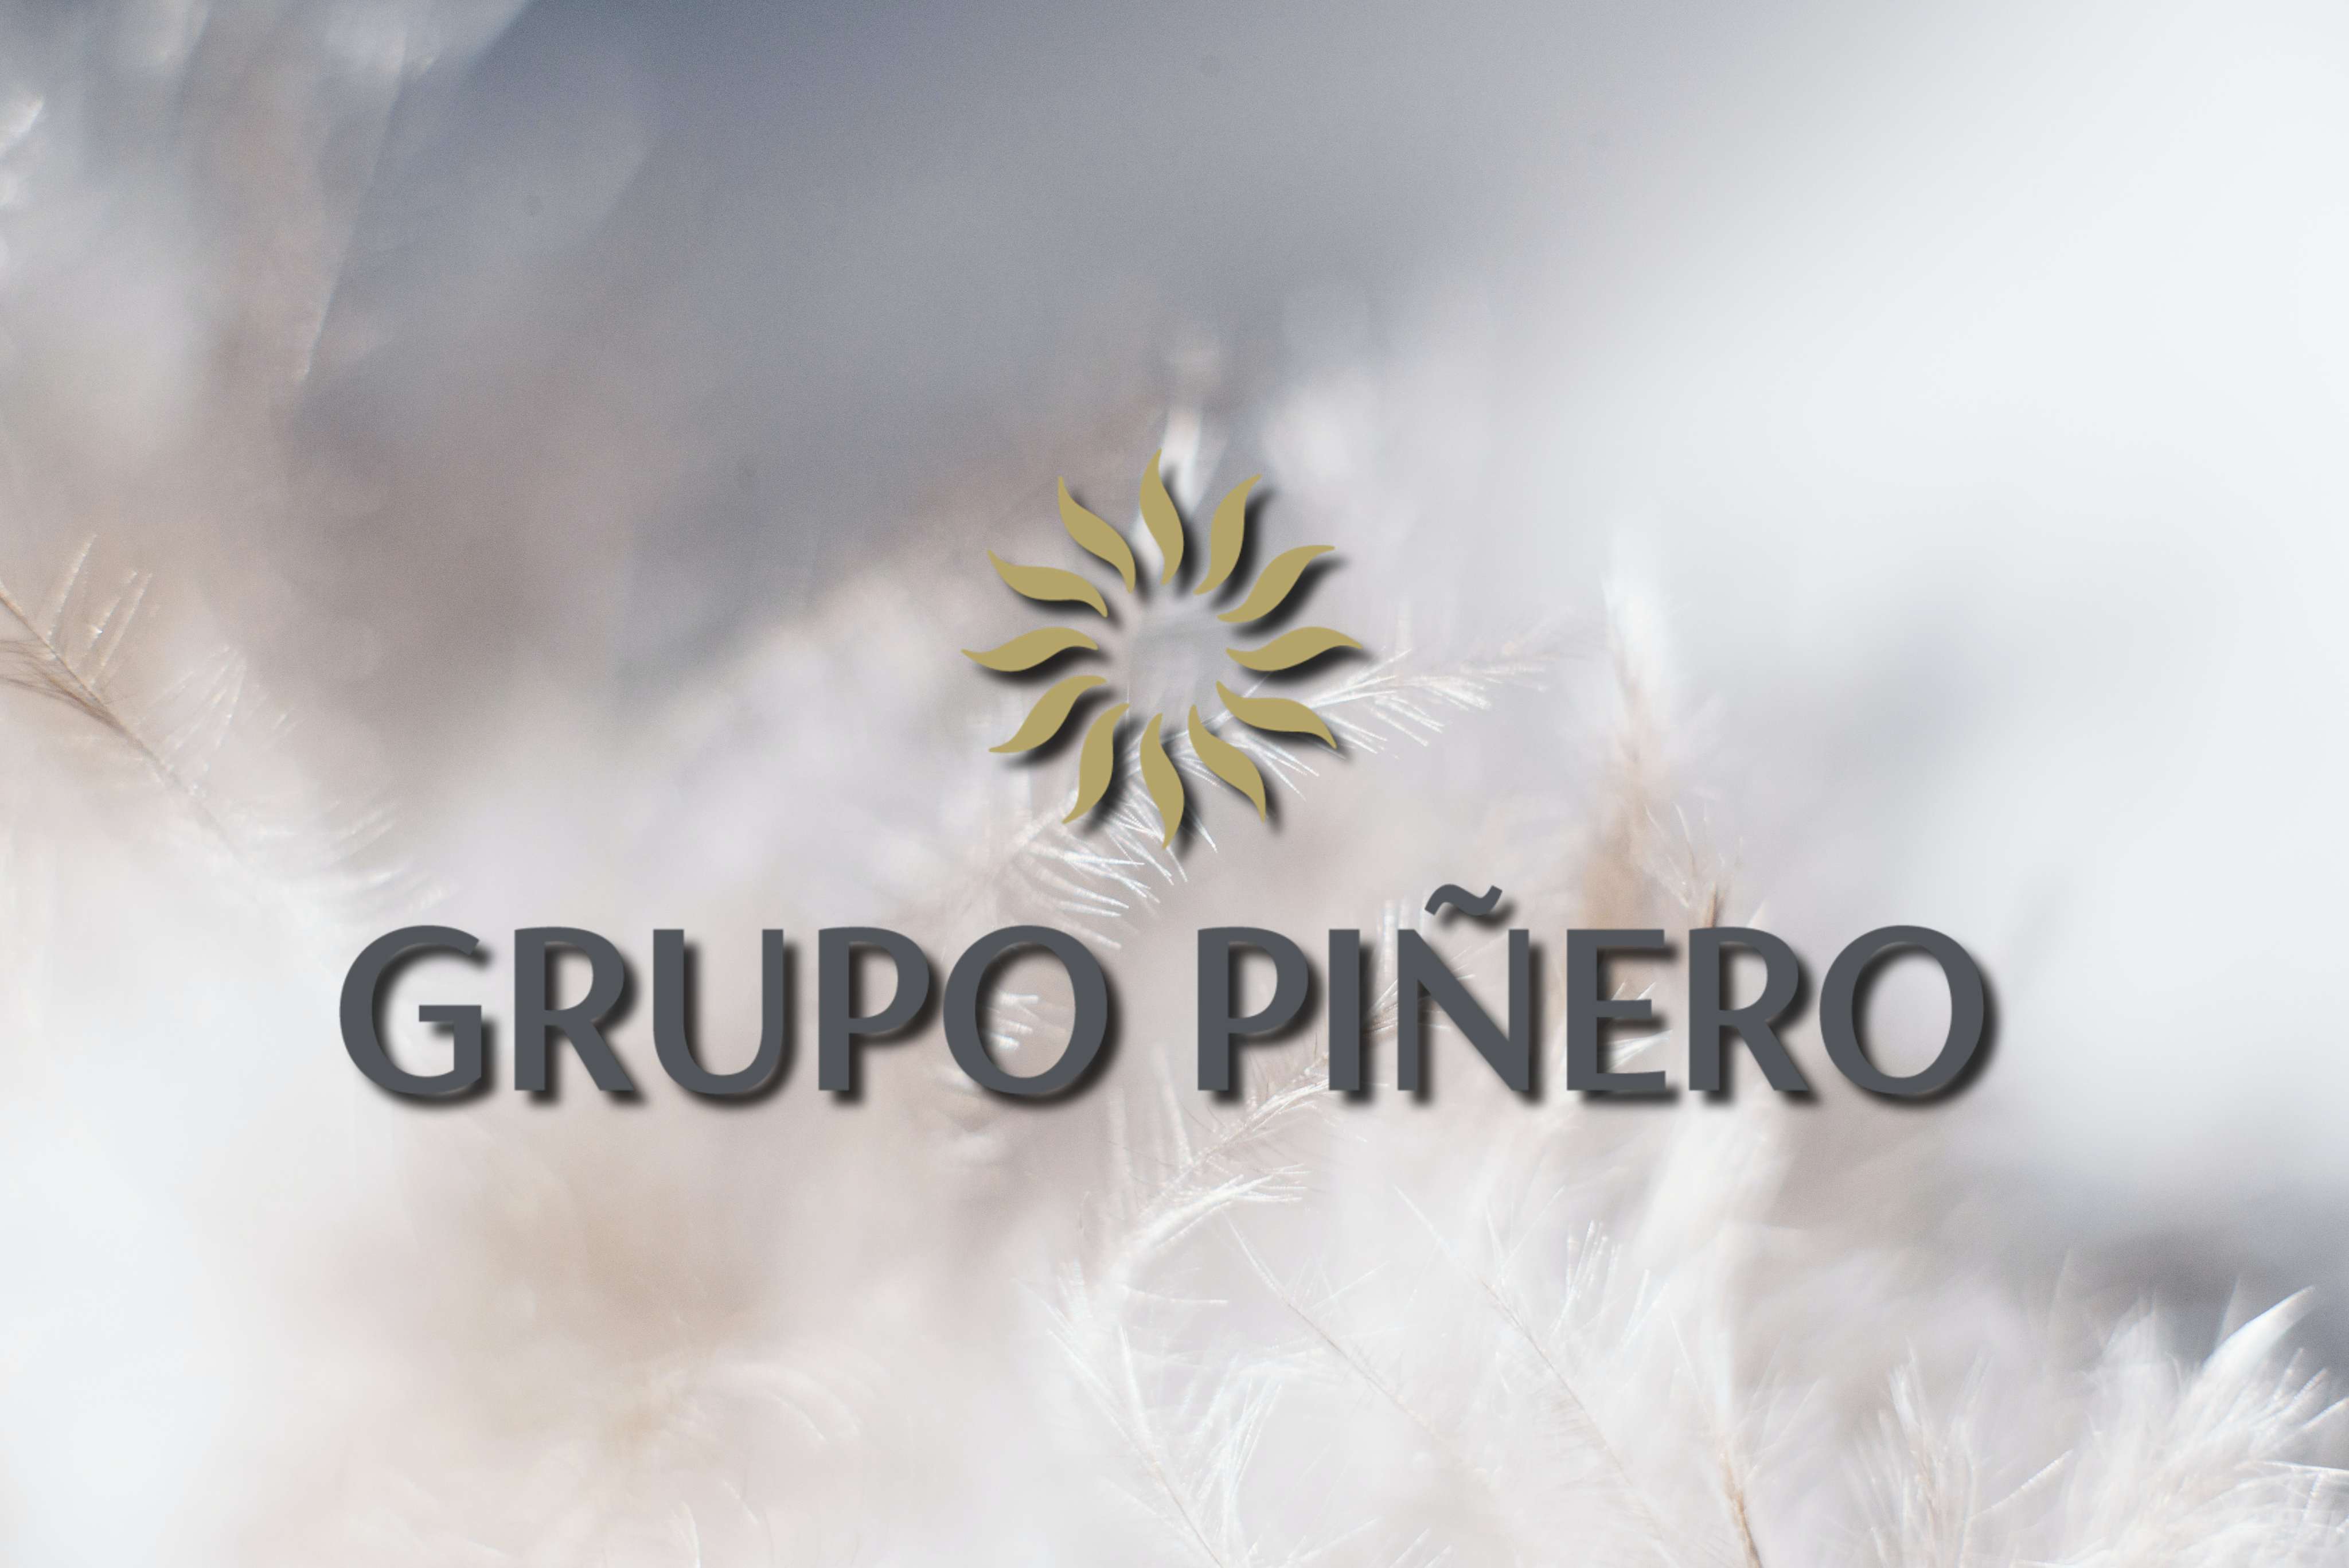 Grupo Piñero